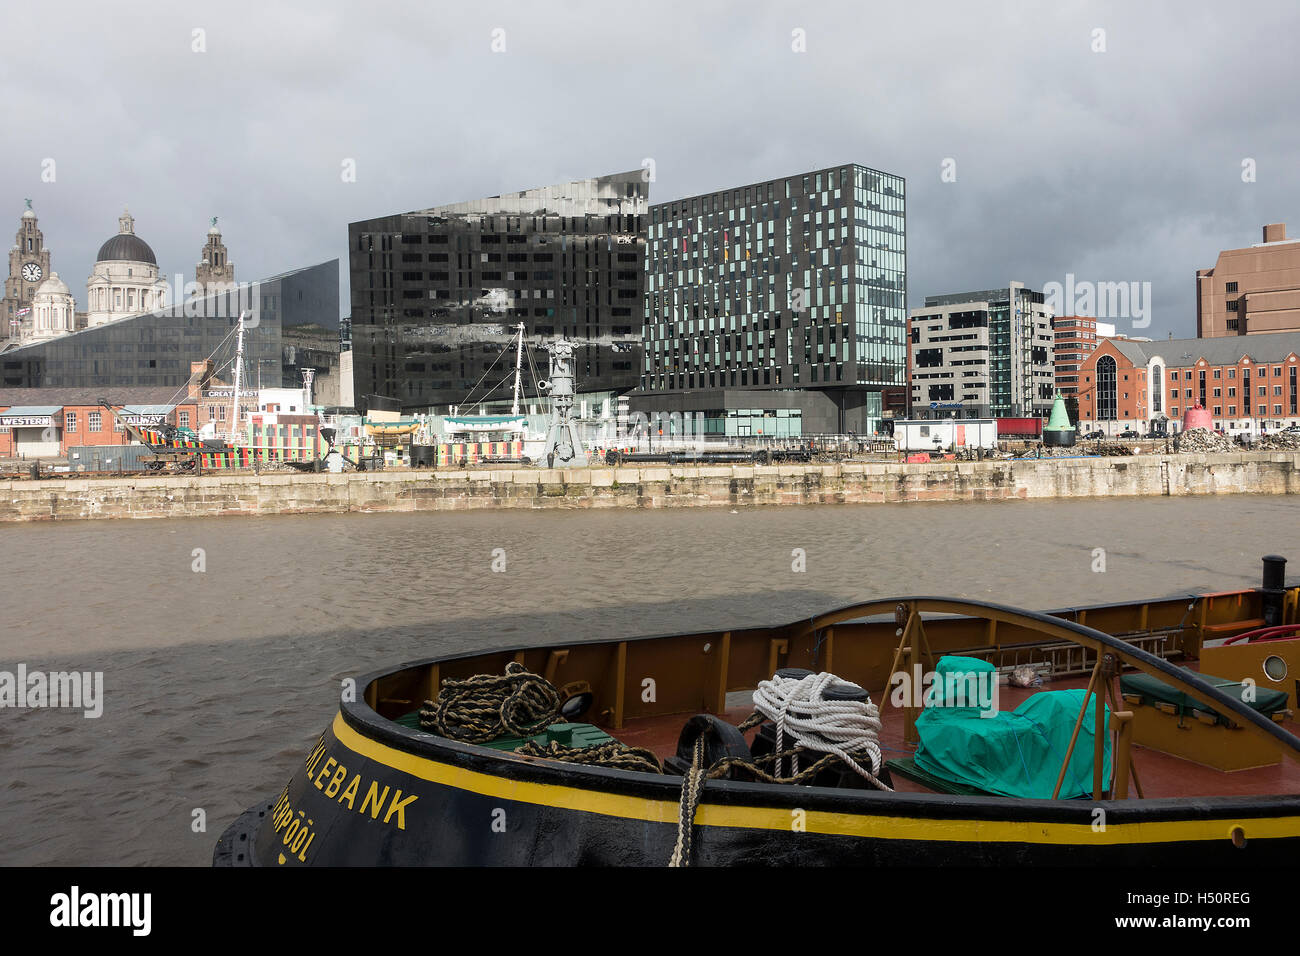 Parte del Museo de Liverpool con el edificio de la isla de Mann y ojos abiertos, galería, Liver Building Pier Head Merseyside UK Foto de stock